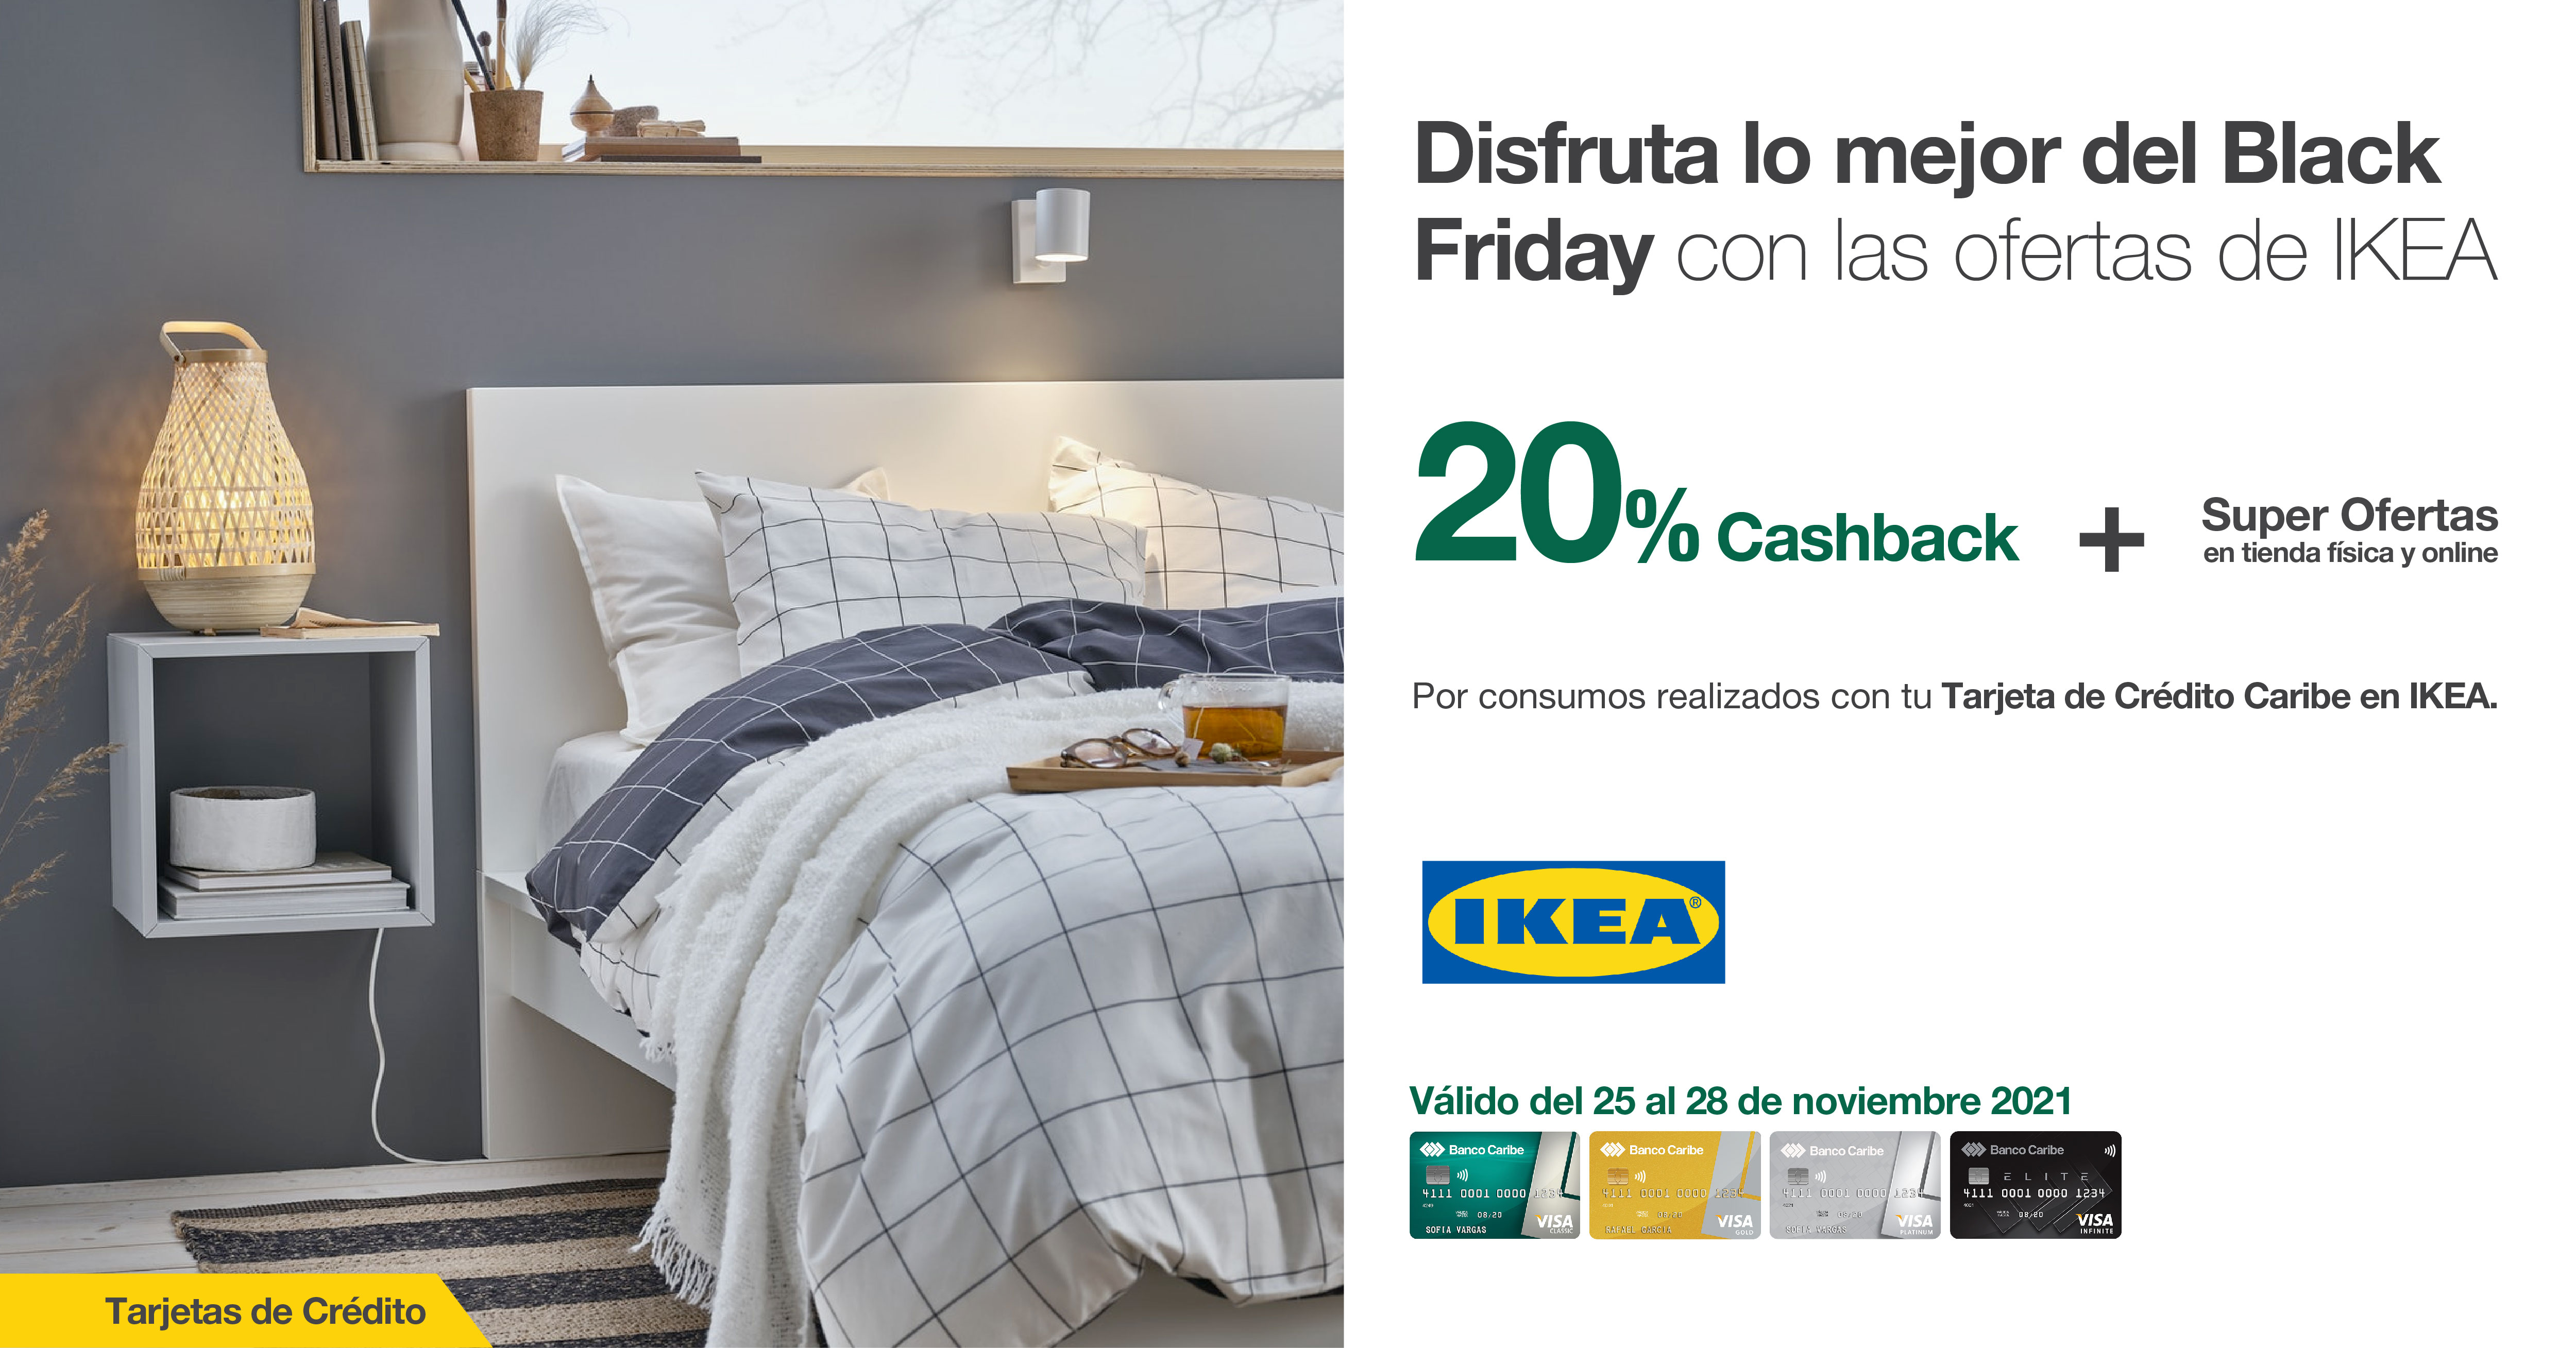 Disfruta lo mejor del Black Friday con las ofertas de IKEA